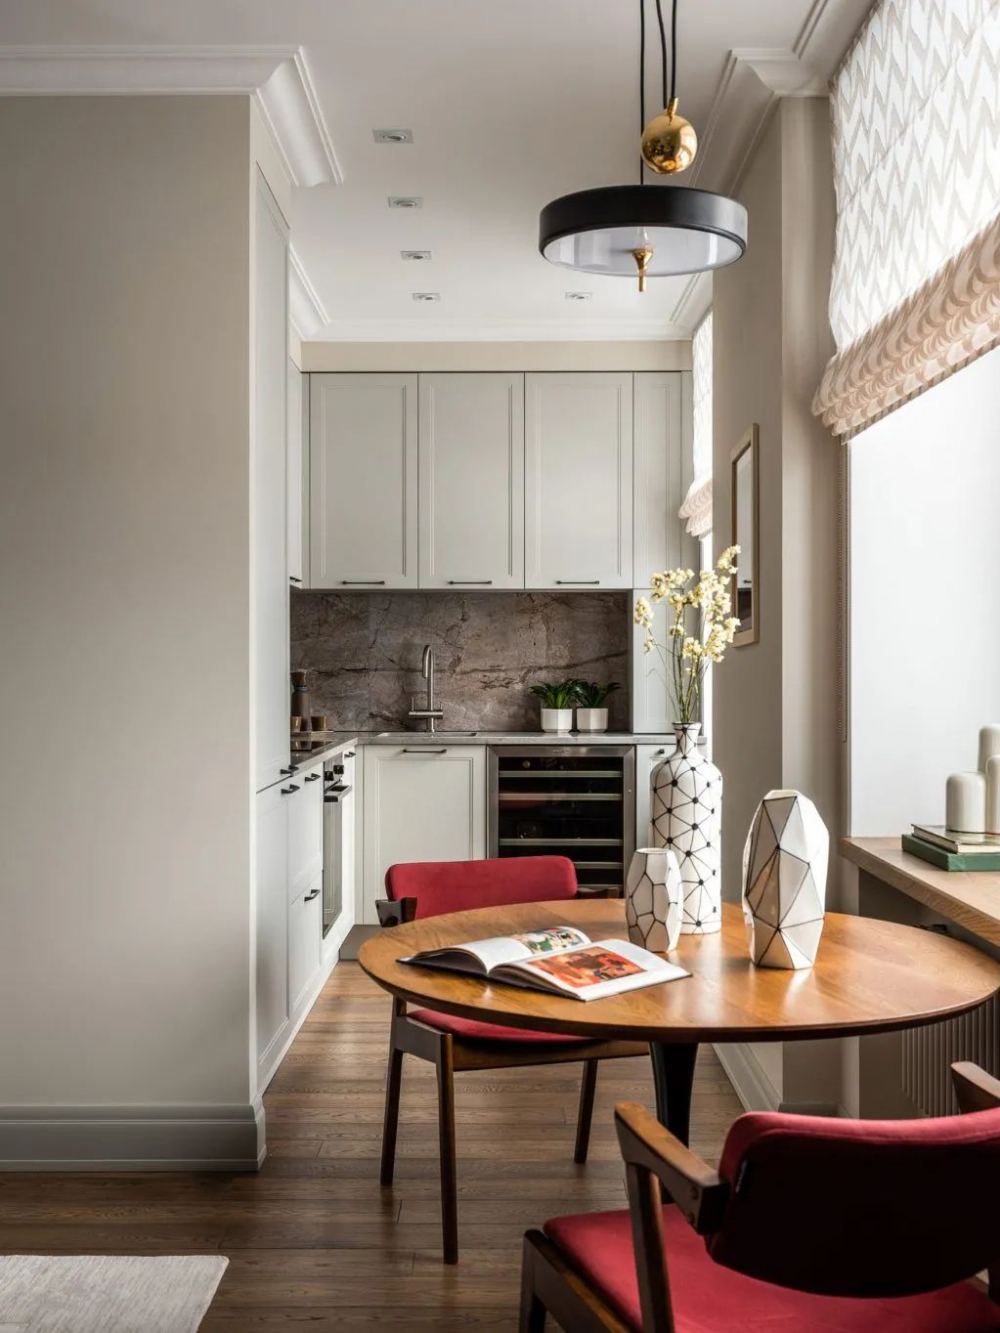 Những “tuyệt chiêu” thiết kế cho căn bếp 4-5m2, không gian nhỏ mà hiệu quả sử dụng vẫn hoàn hảo - Ảnh 1.